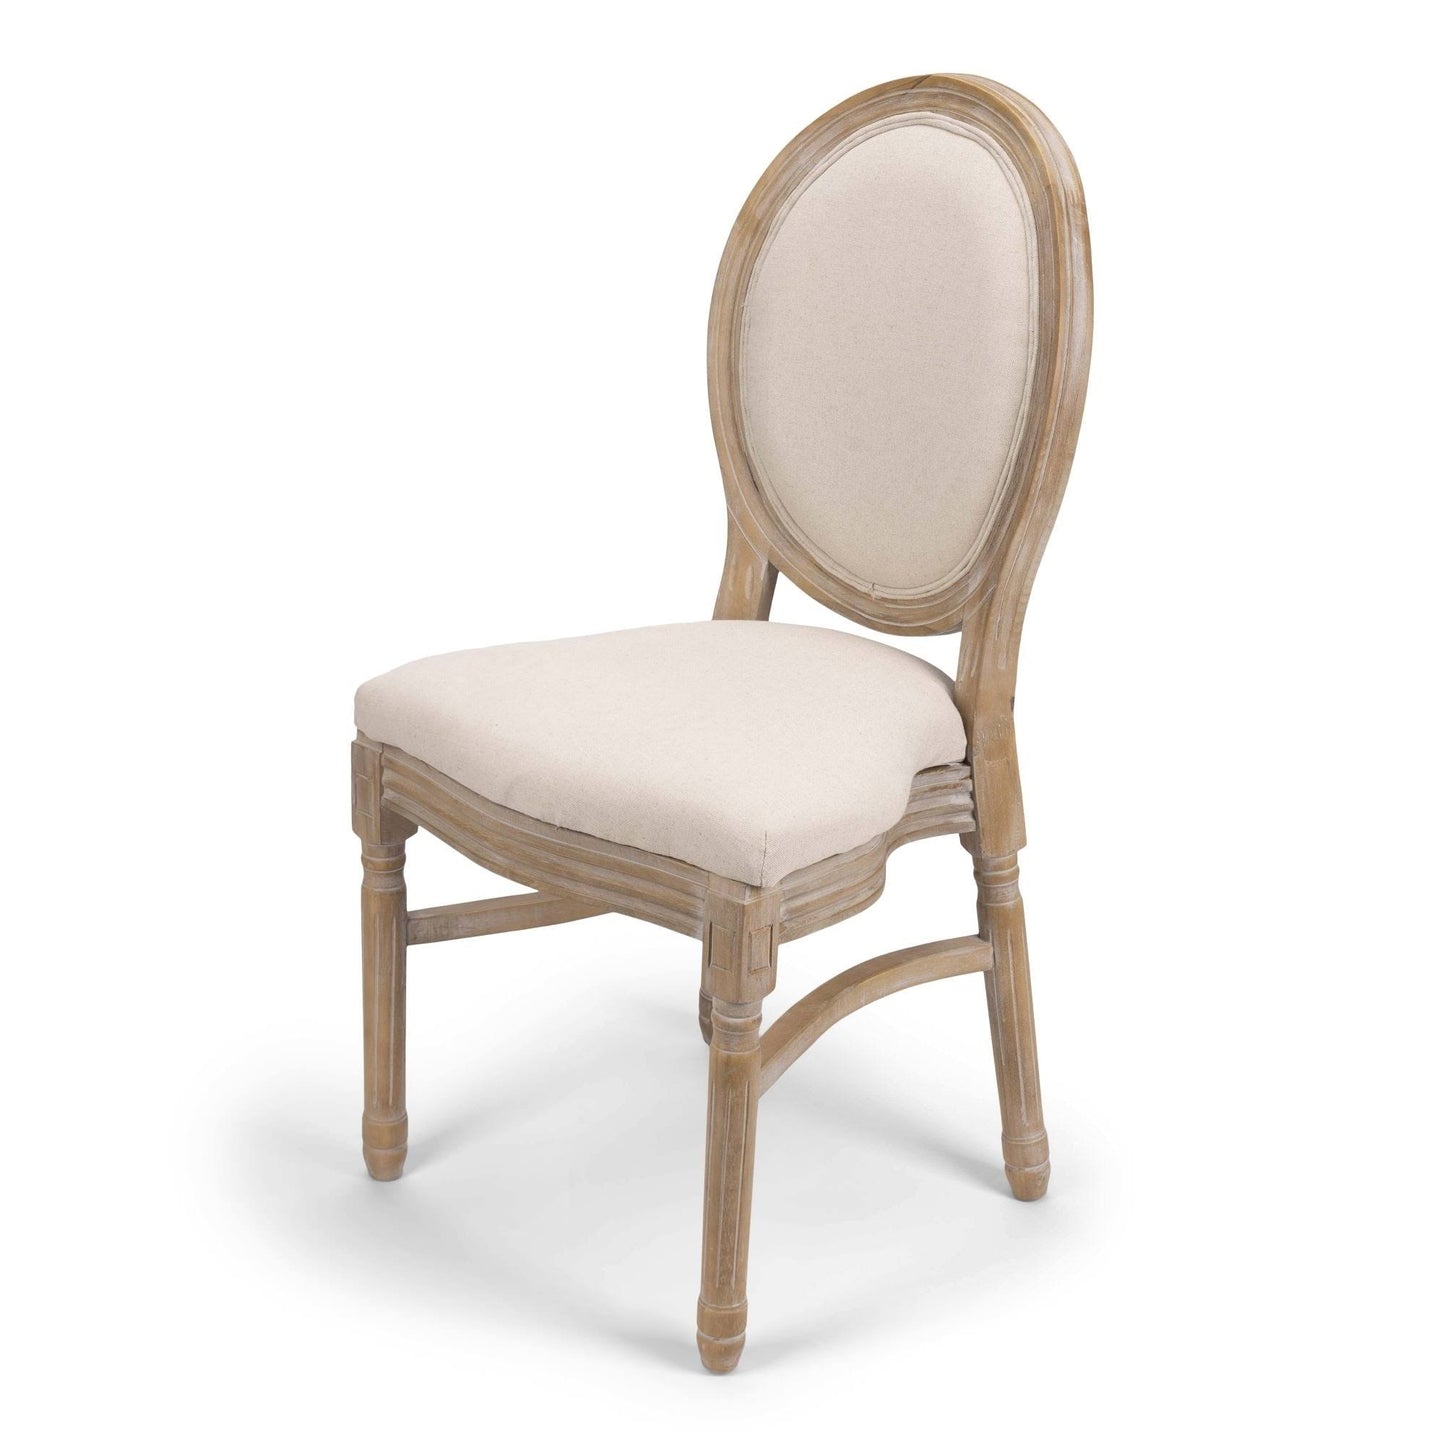 King Louis Chair - Natural